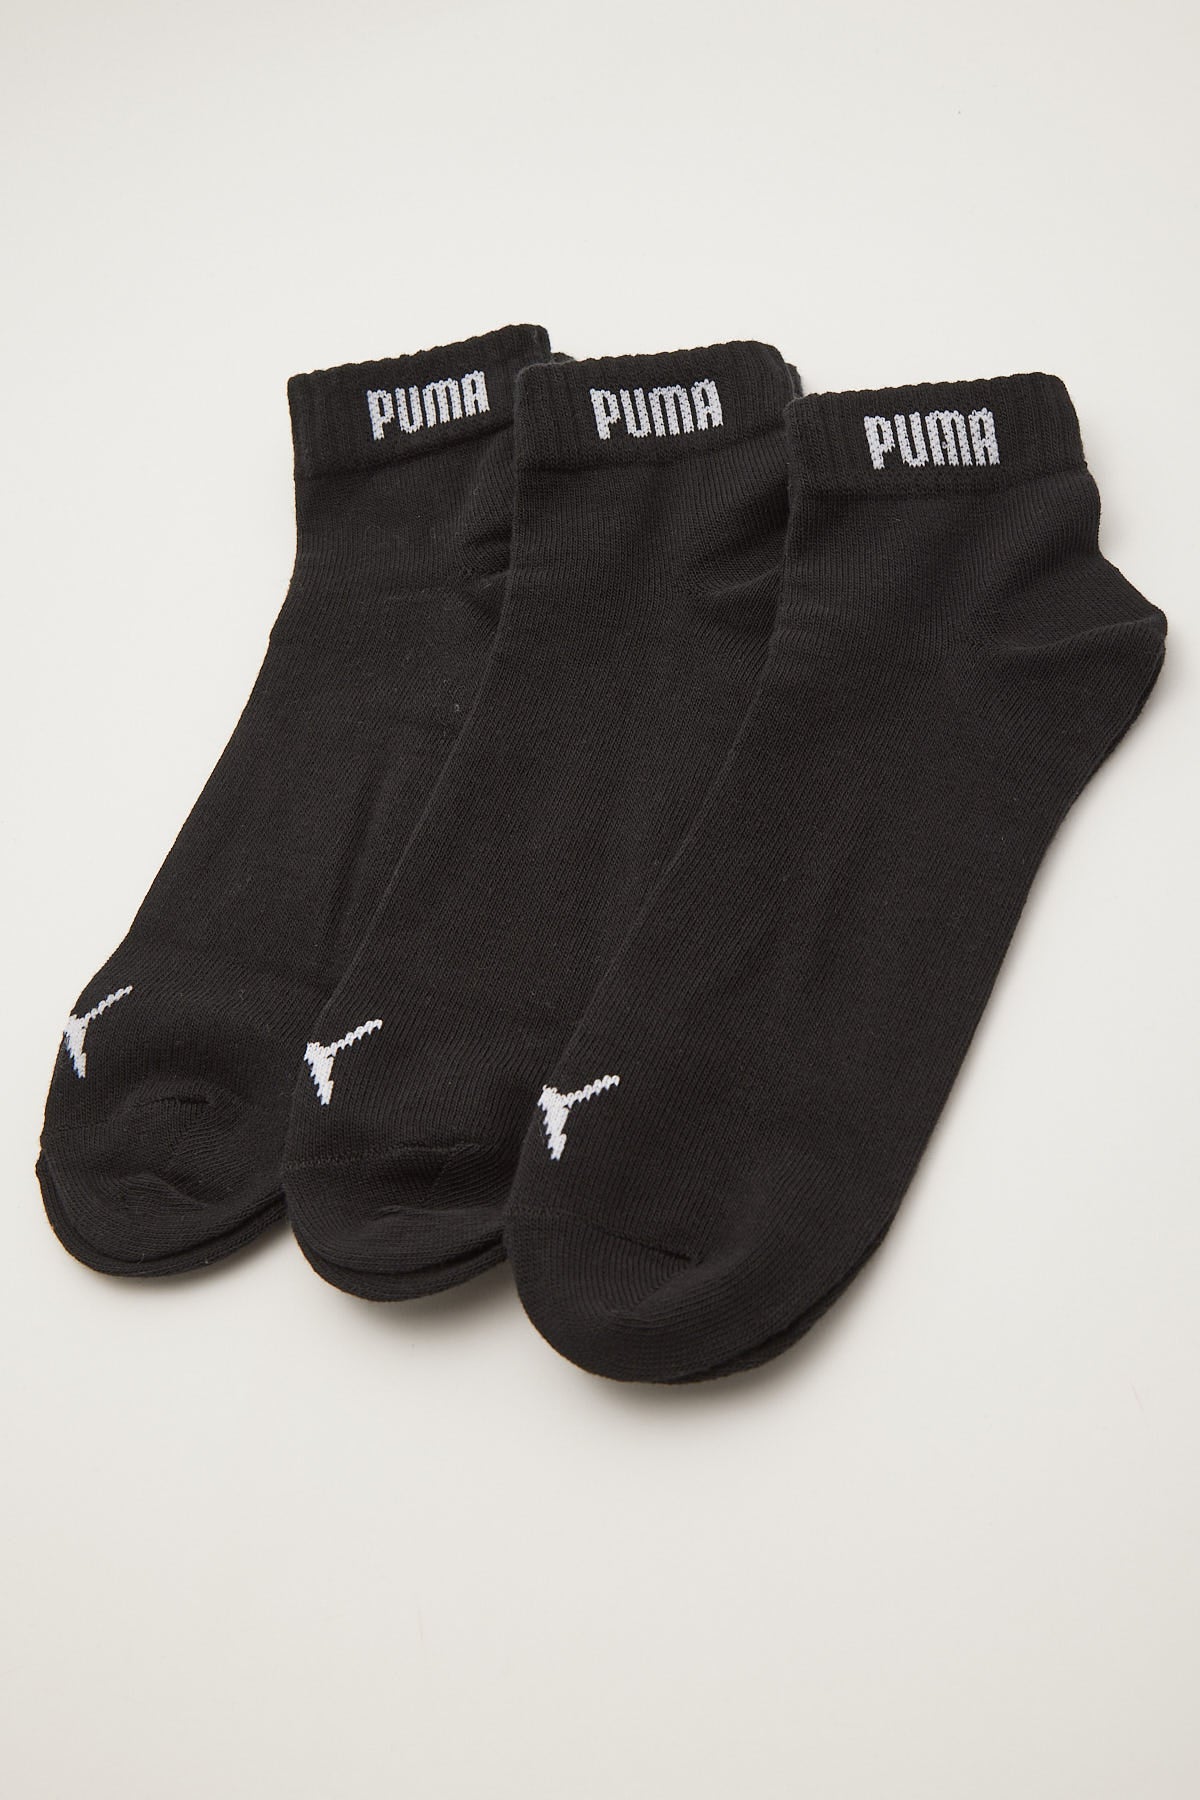 Puma Puma Quarter-V 3P black Black